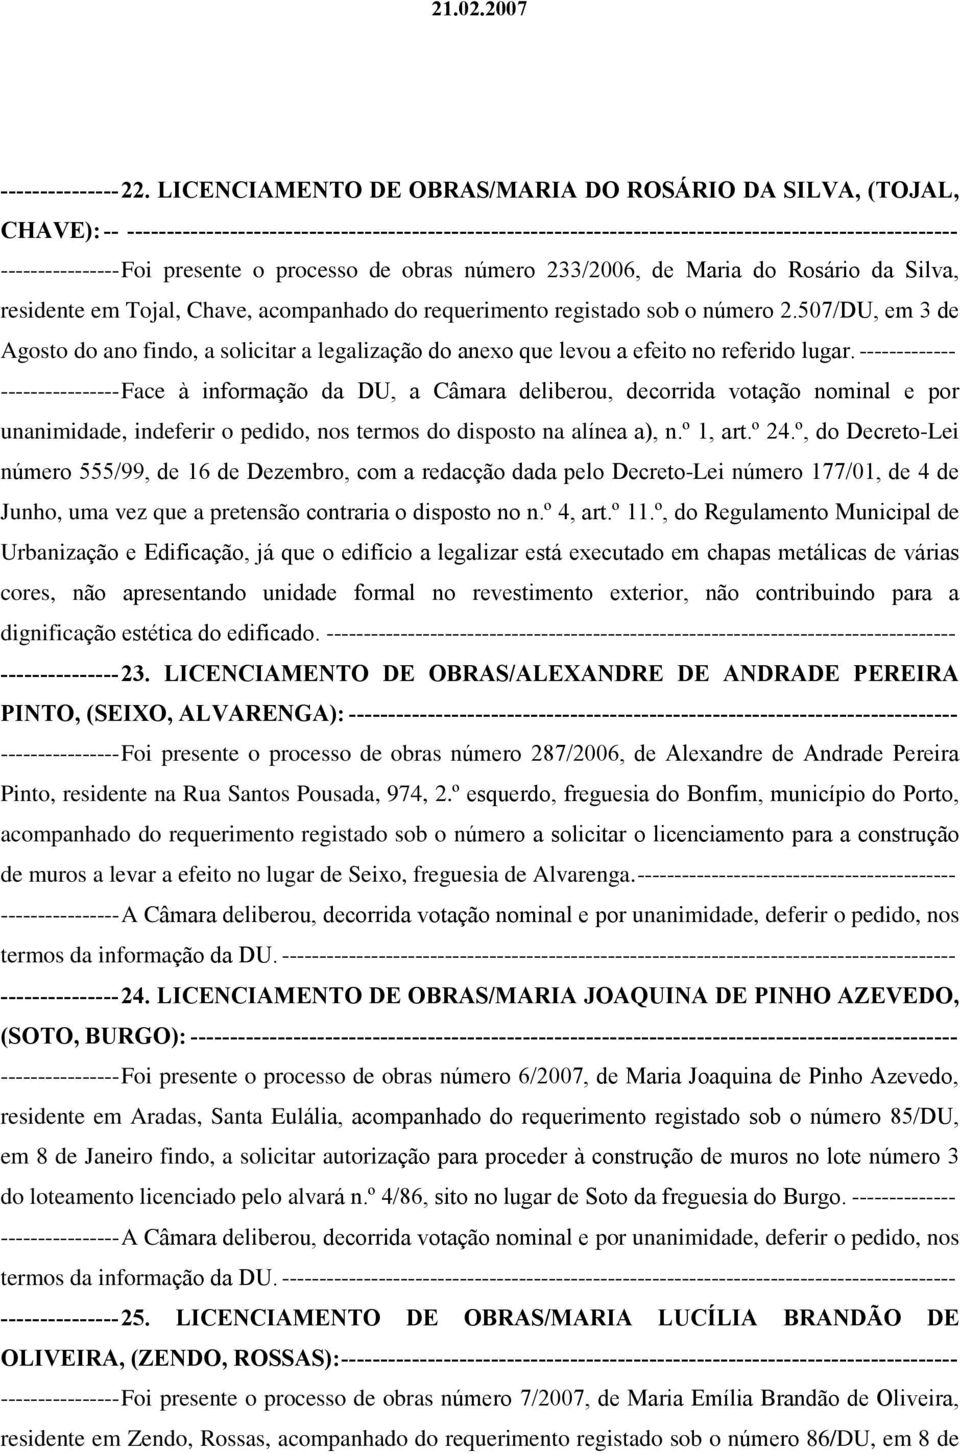 presente o processo de obras número 233/2006, de Maria do Rosário da Silva, residente em Tojal, Chave, acompanhado do requerimento registado sob o número 2.